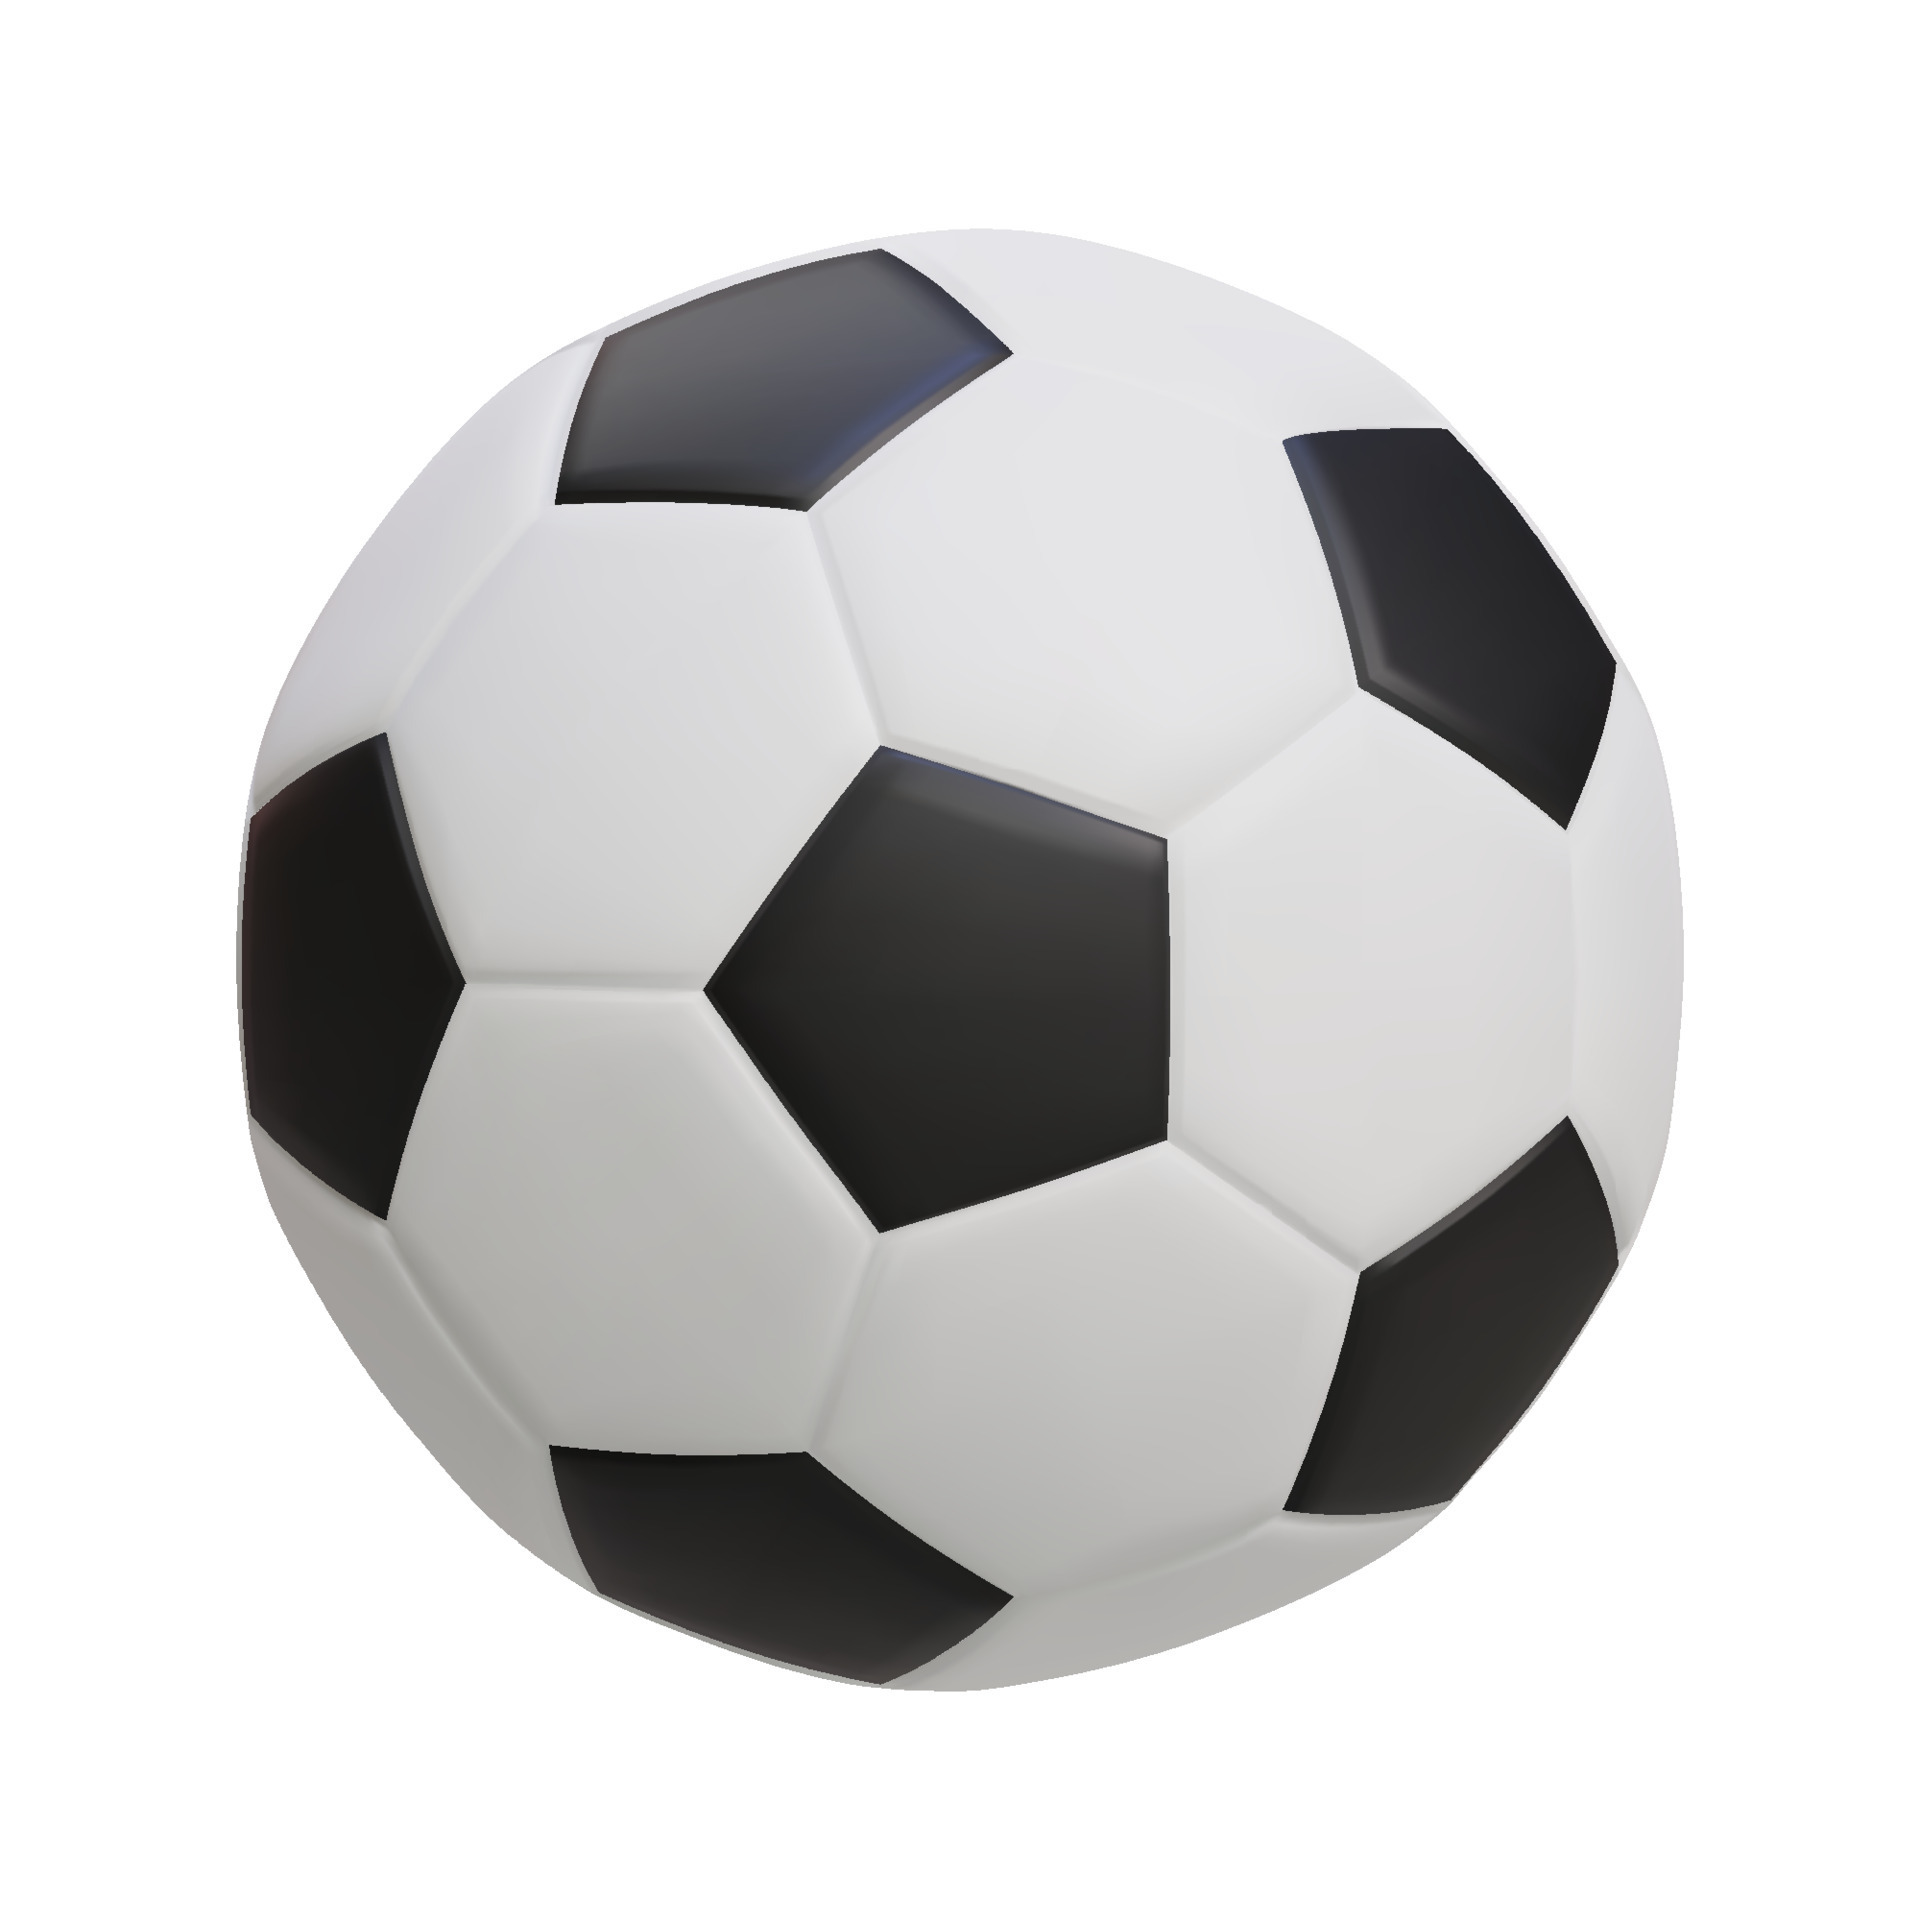 572 imágenes, fotos de stock, objetos en 3D y vectores sobre Balon football